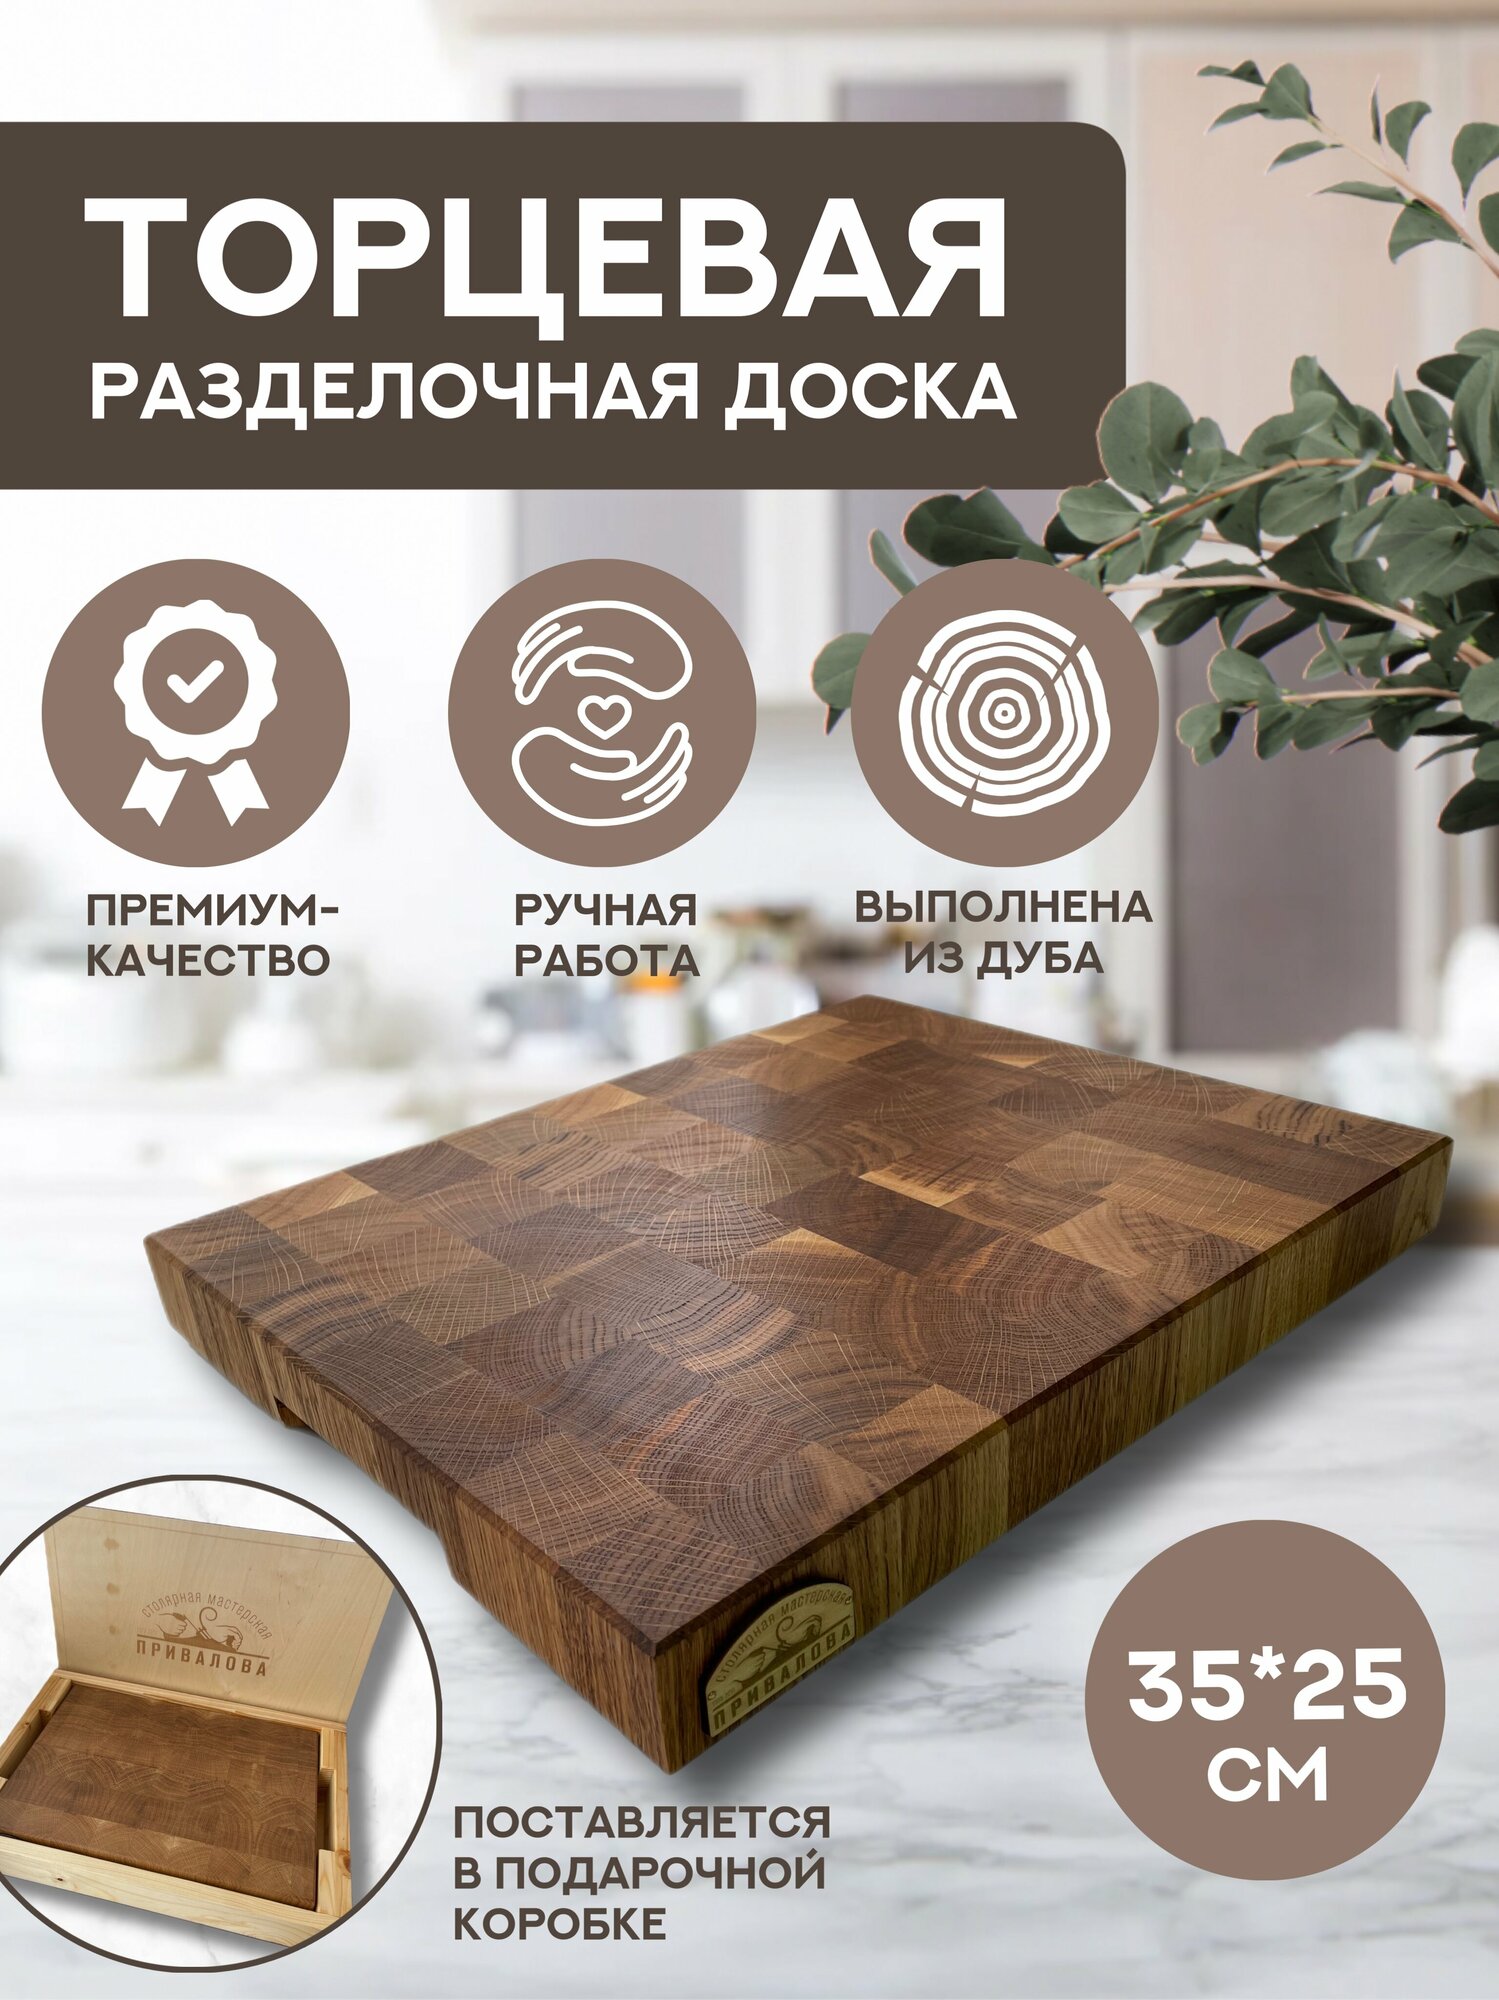 Торцевая разделочная доска деревянная 35*25 см в подарочной упаковке